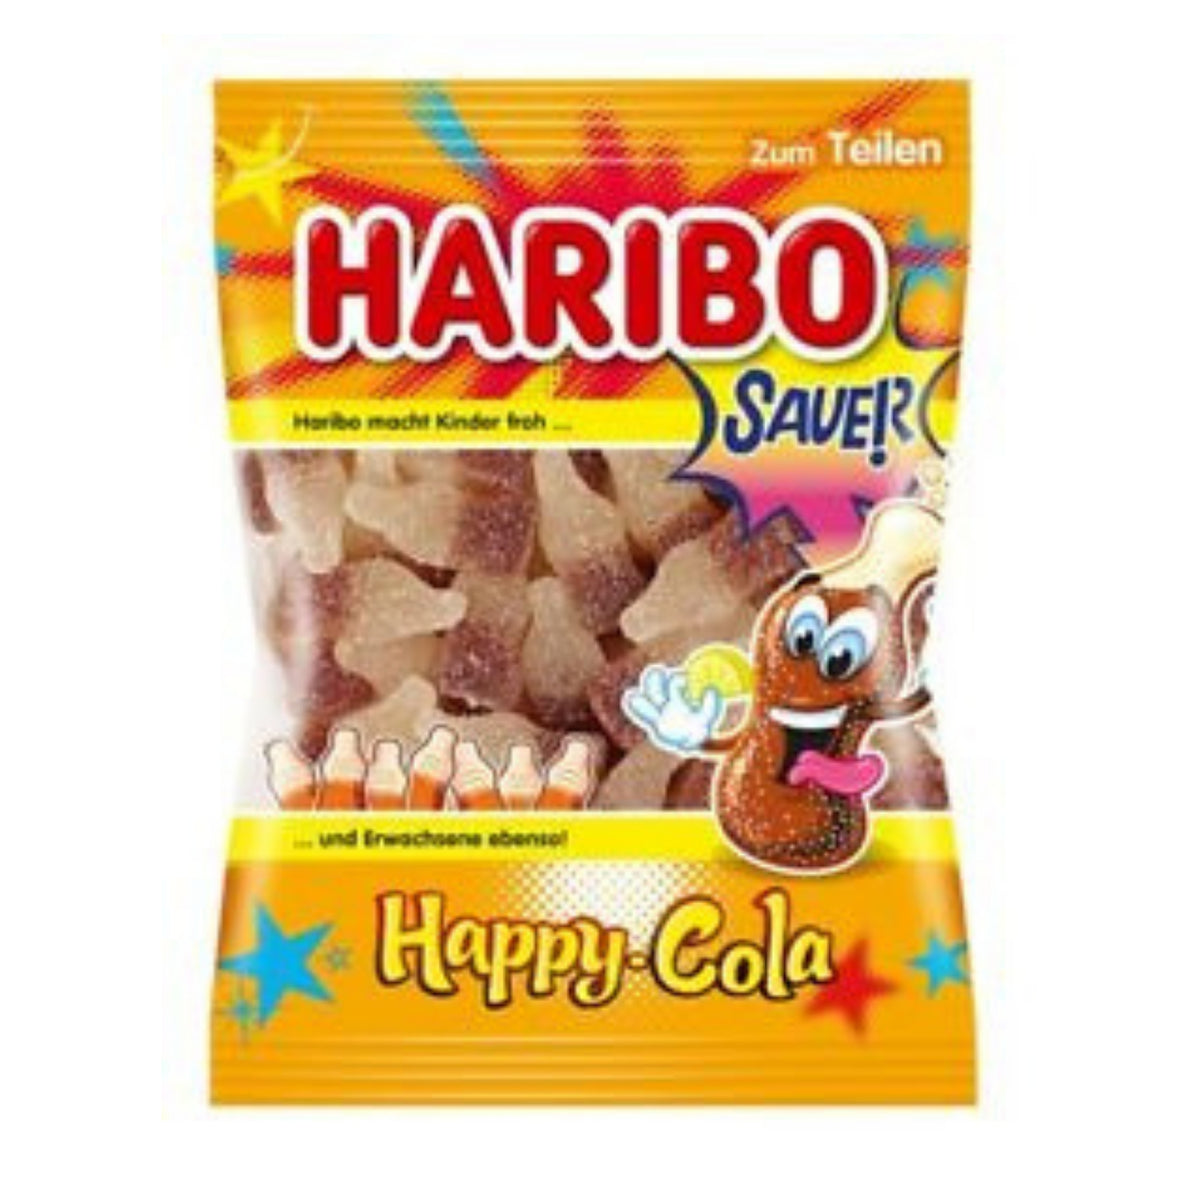 Haribo Happy Cola Saver 